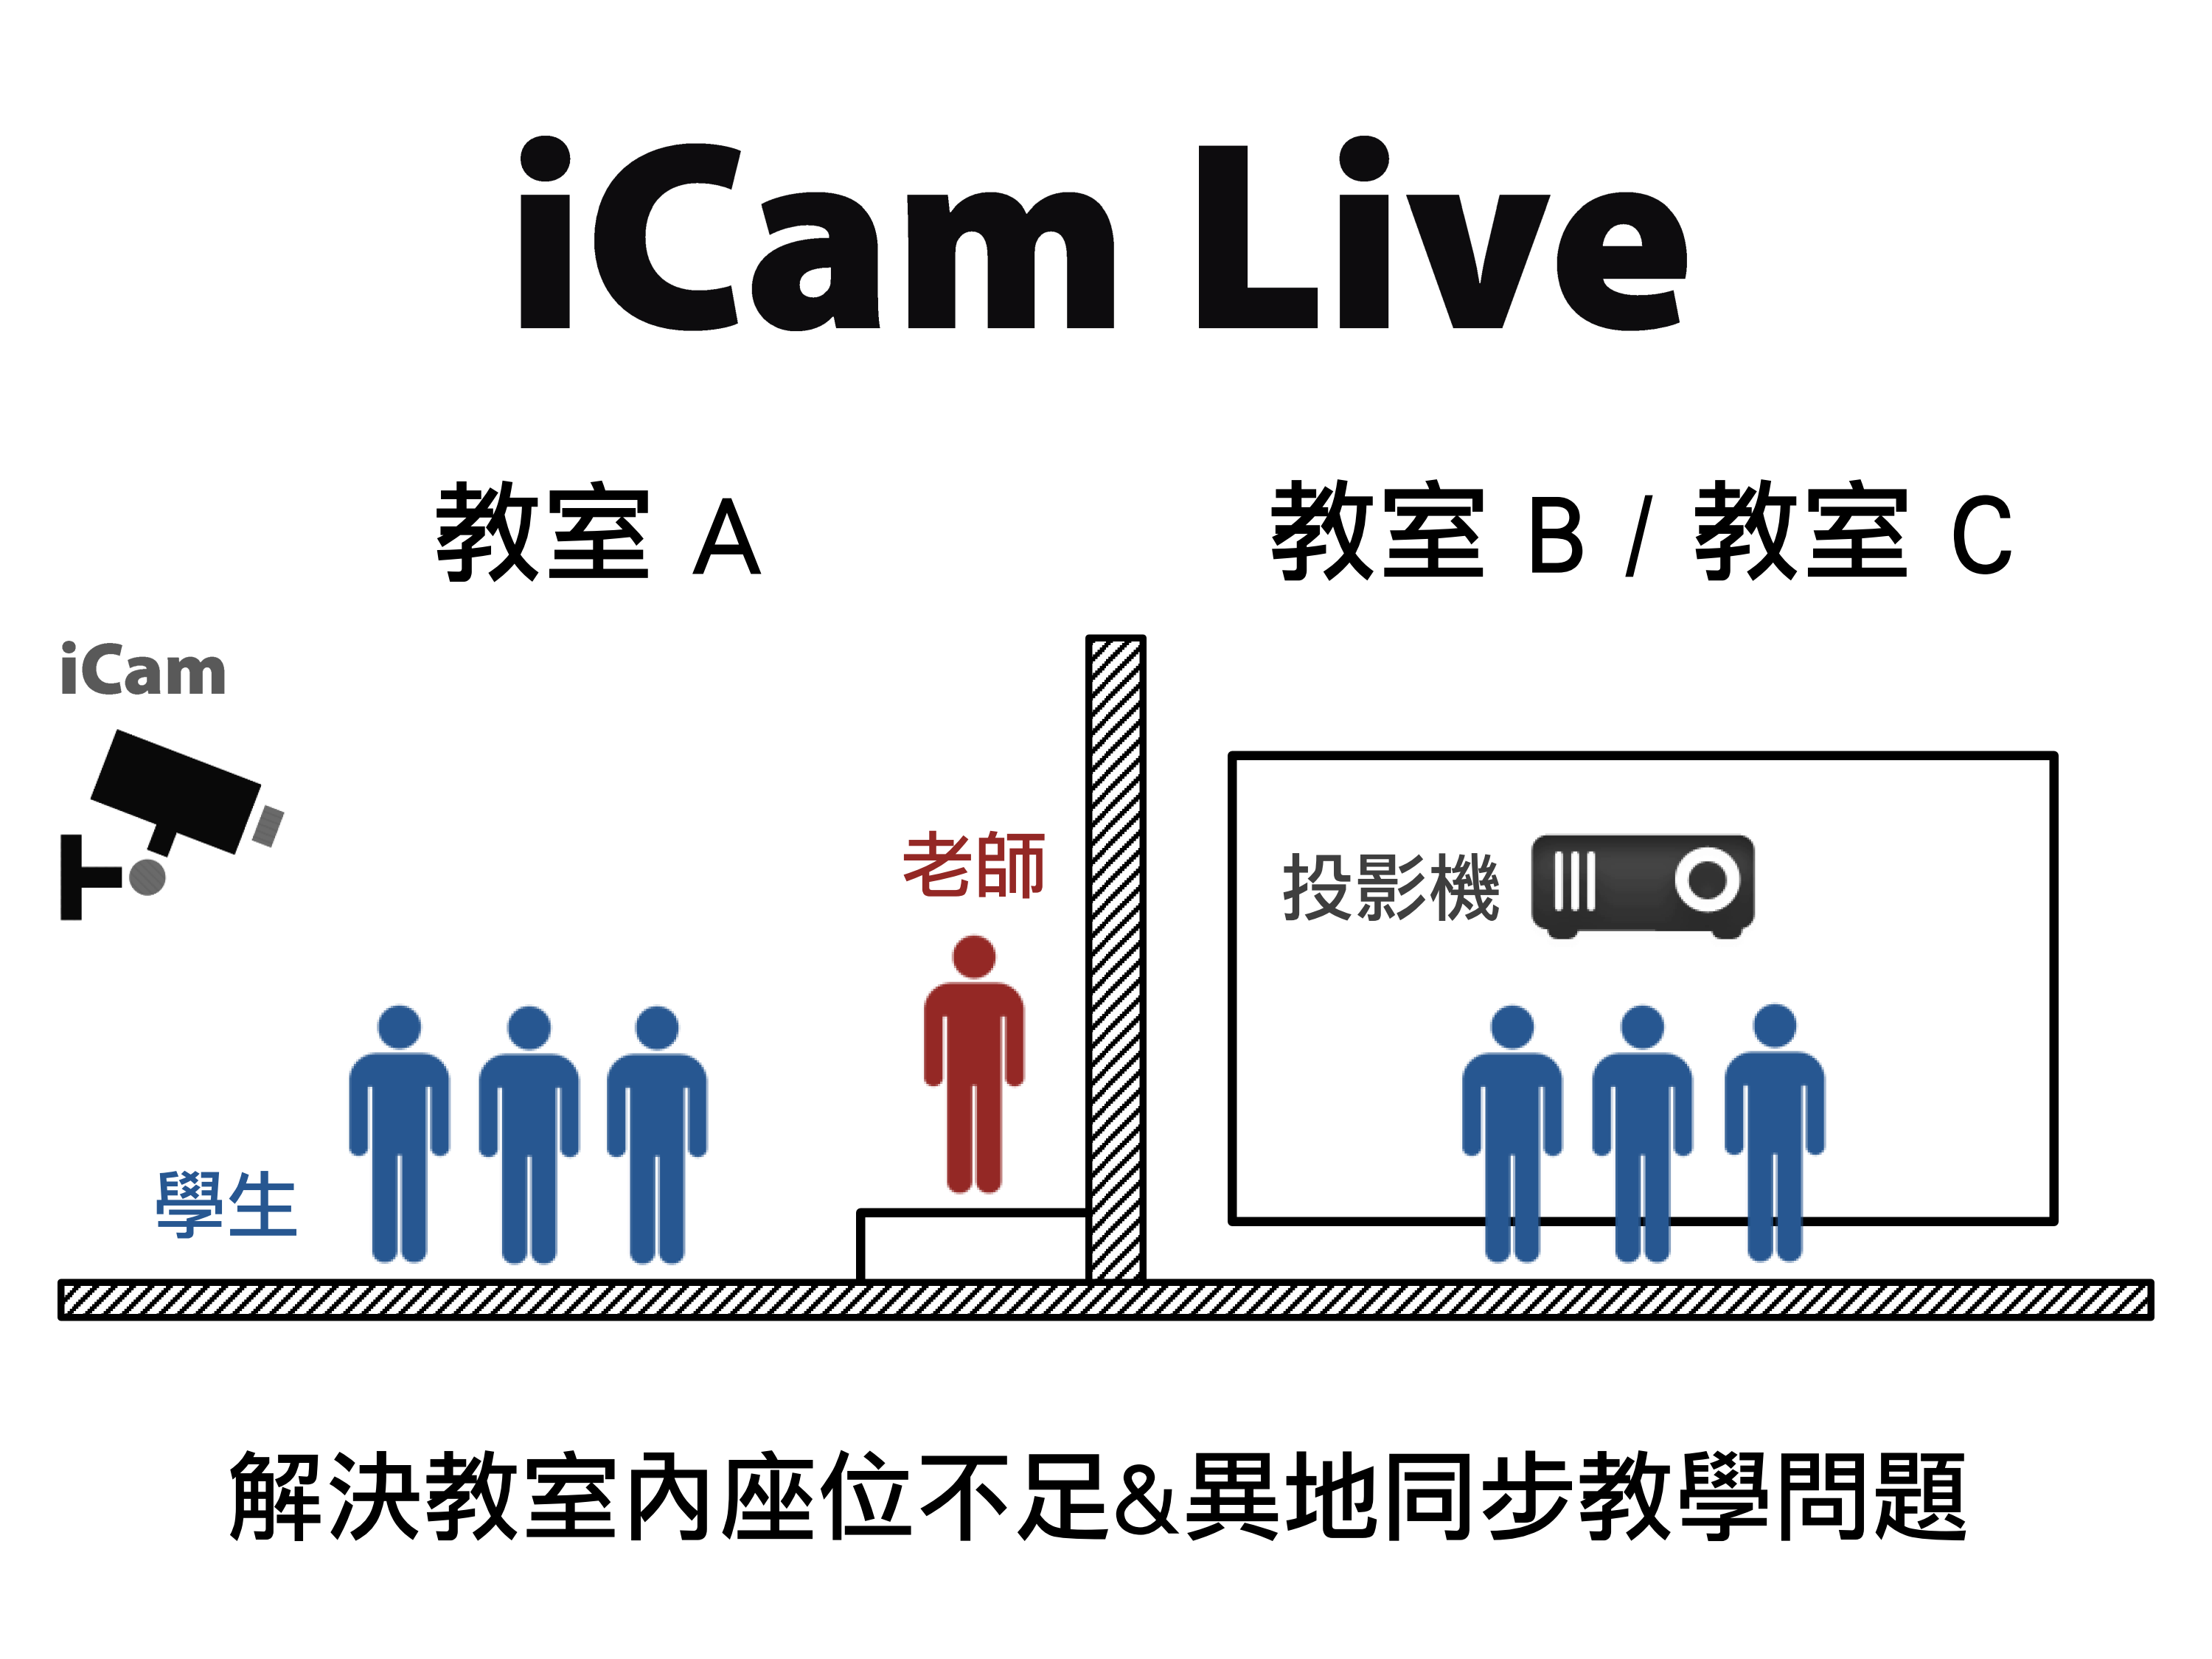 藍眼科技提供免費的iCam® Live現場直播軟體給教育單位